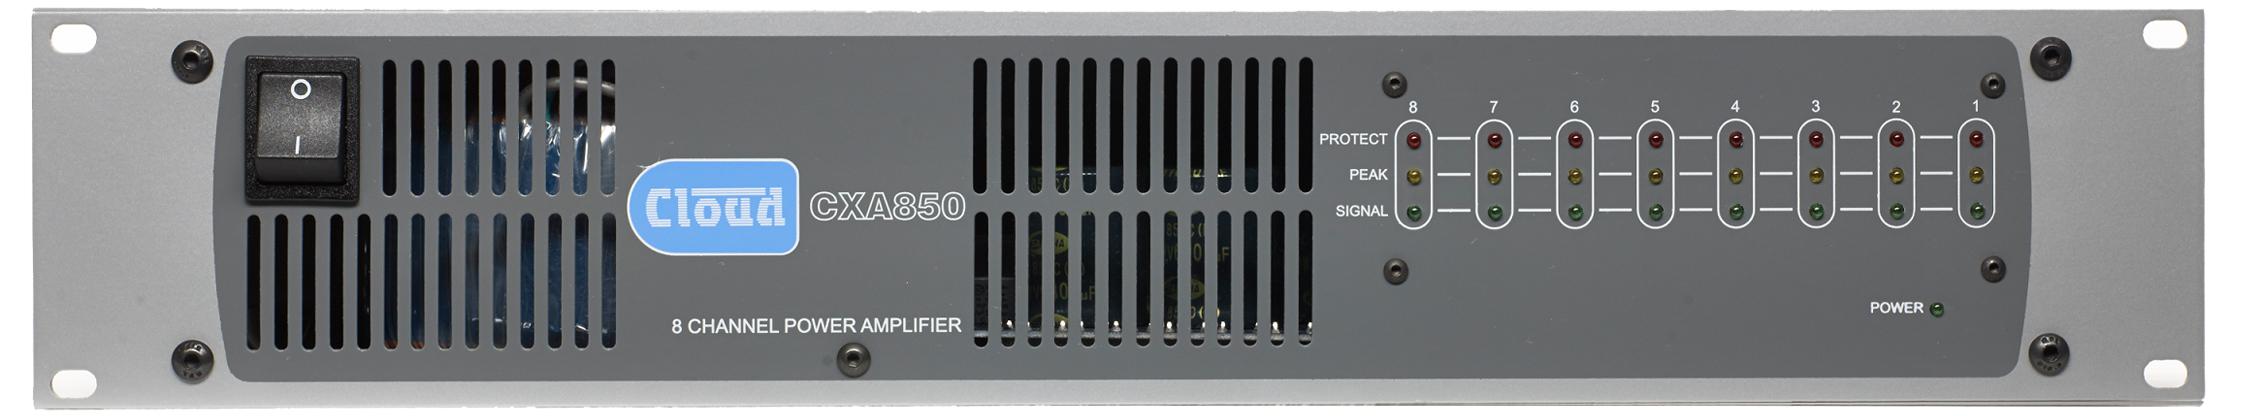 CXA850 8 x 50W Amplifier